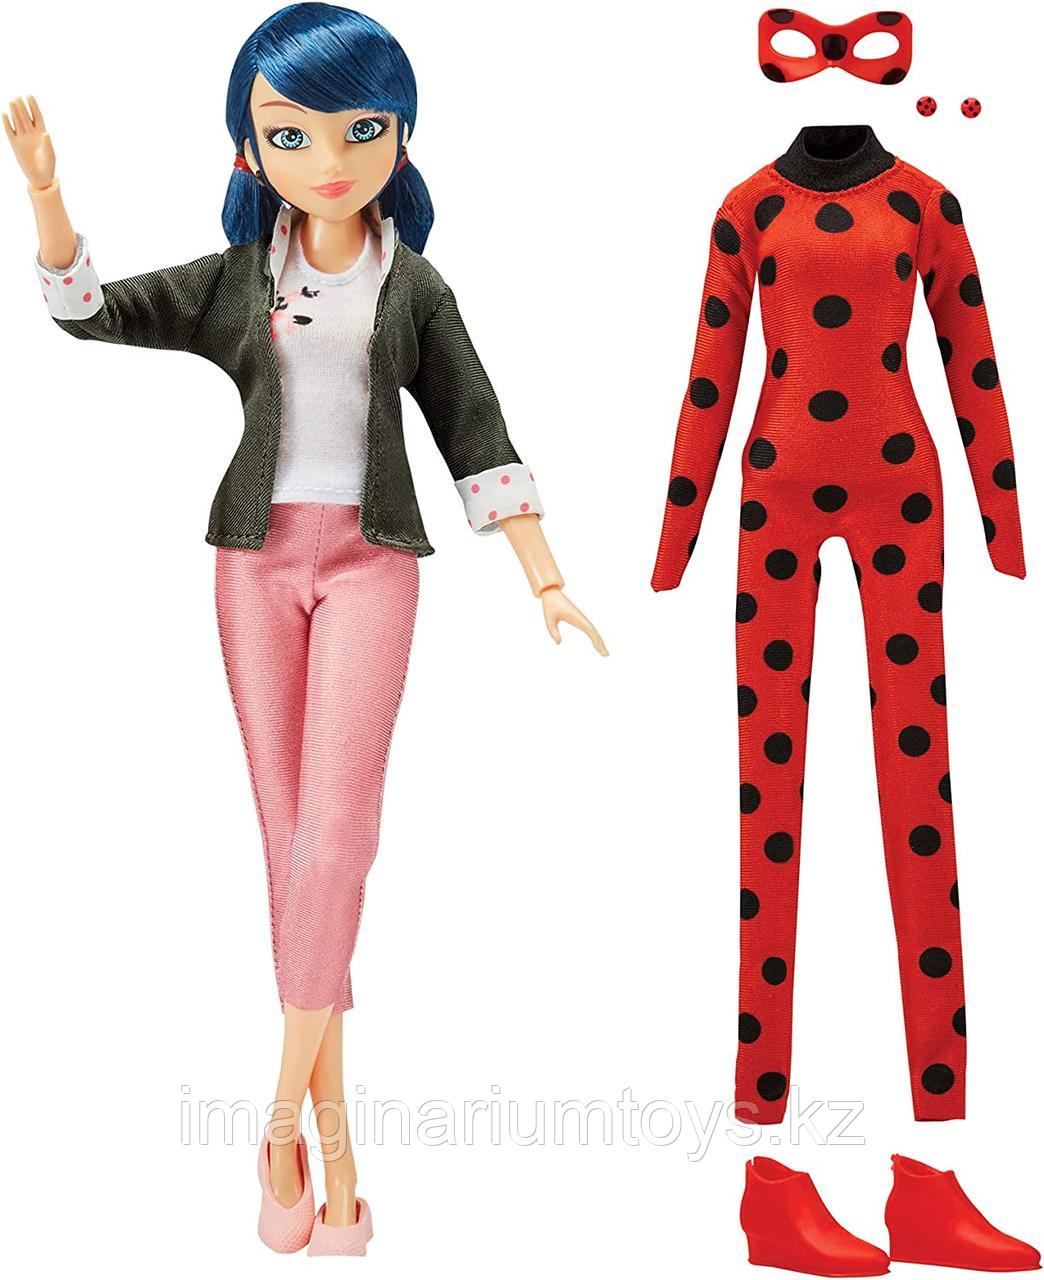 Кукла Леди Баг Маринетт с двумя комплектами одежды, фото 1